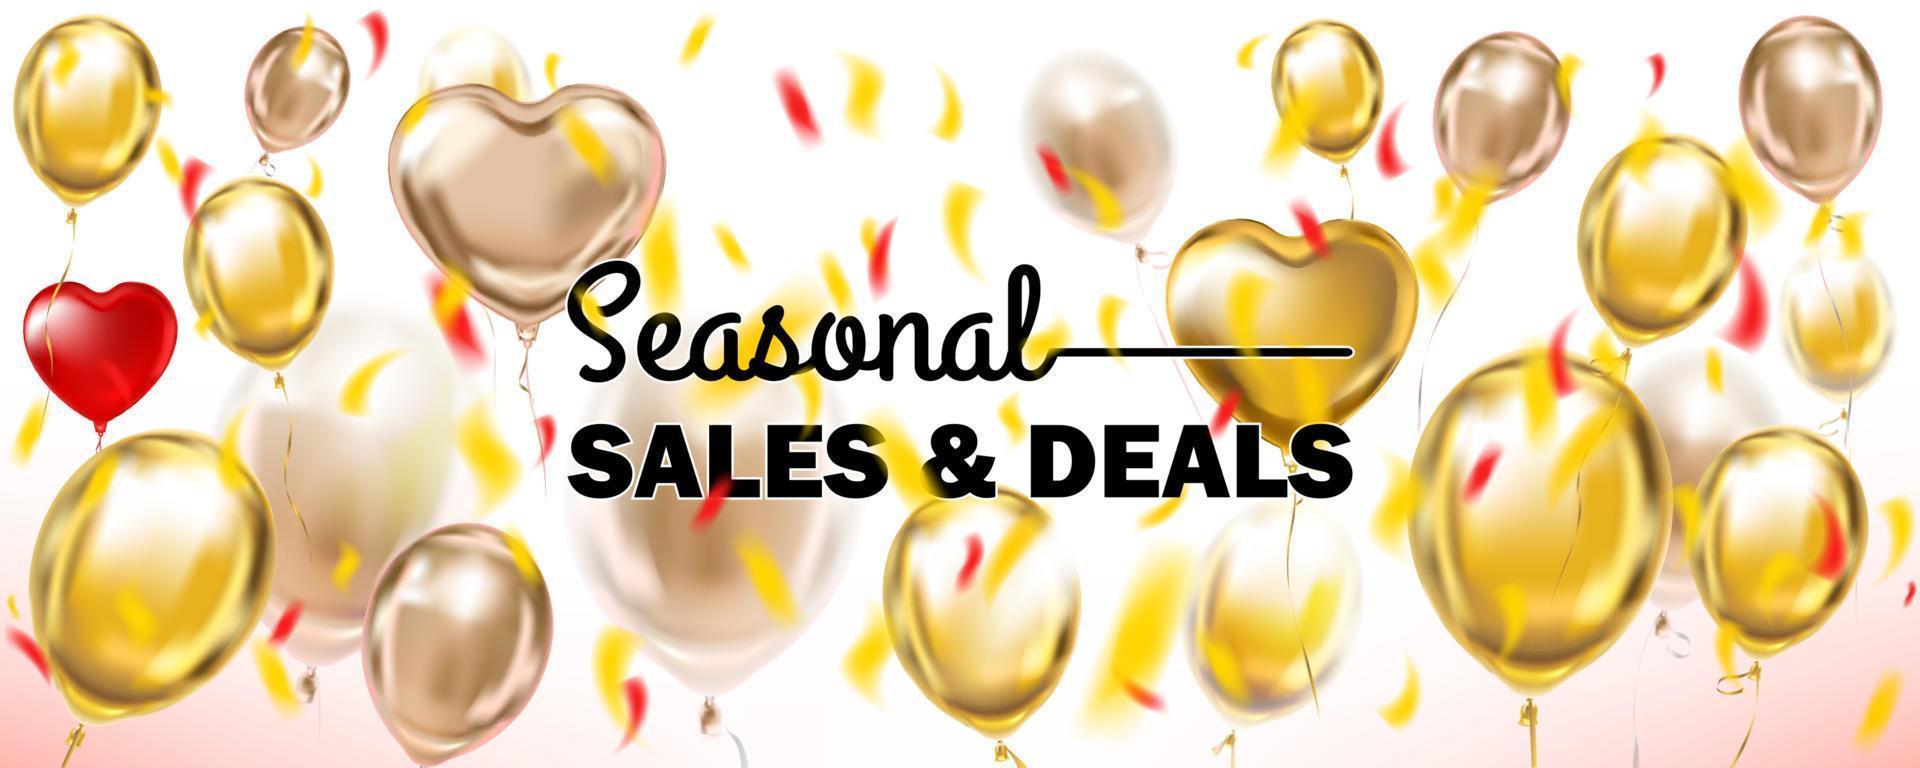 ventas y ofertas de temporada pancarta blanca y dorada con globos metálicos vector